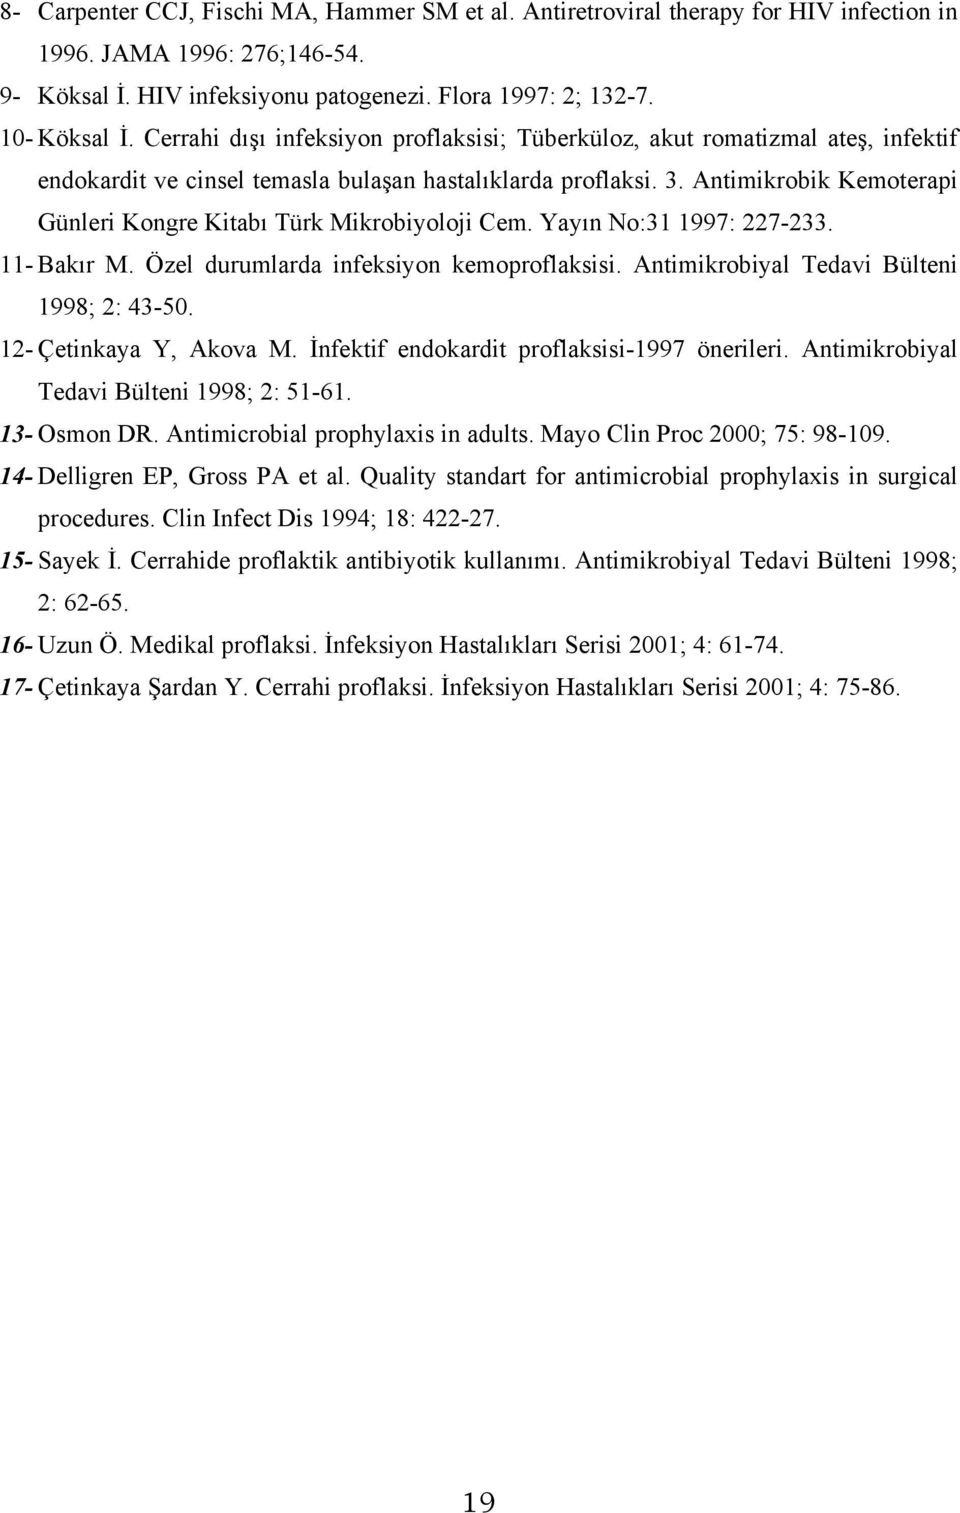 Antimikrobik Kemoterapi Günleri Kongre Kitabı Türk Mikrobiyoloji Cem. Yayın No:31 1997: 227-233. 11- Bakır M. Özel durumlarda infeksiyon kemoproflaksisi. Antimikrobiyal Tedavi Bülteni 1998; 2: 43-50.